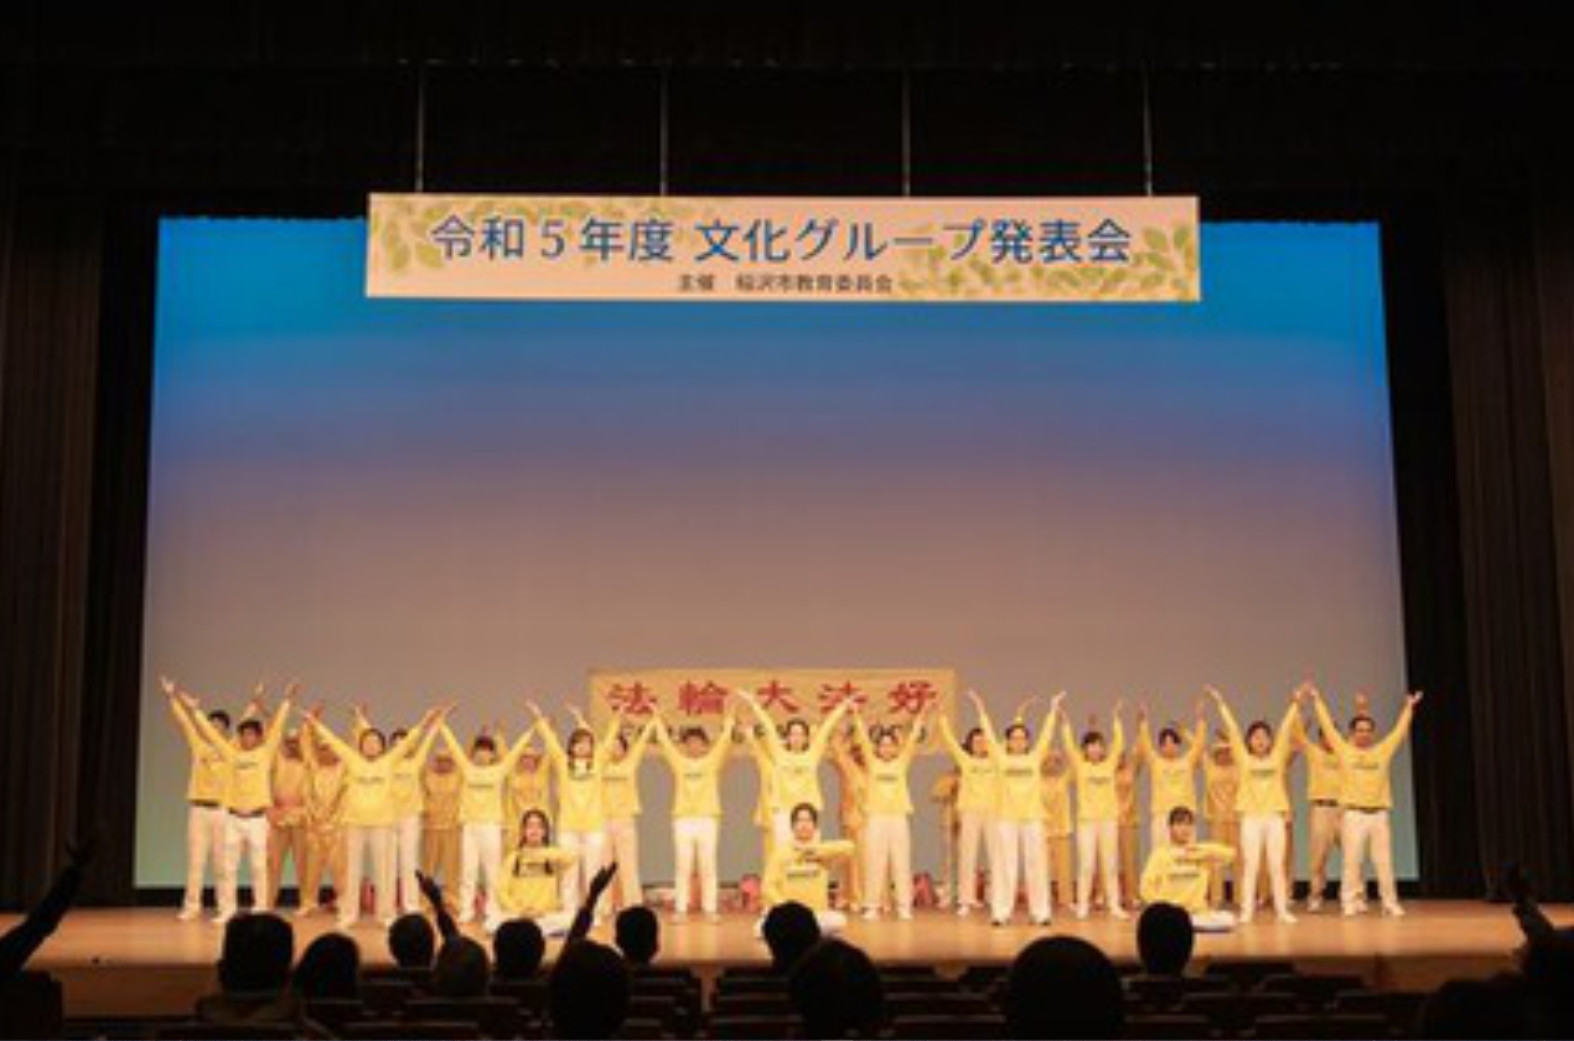 Image for article Japón: un grupo de Falun Dafa actúa en un evento cultural